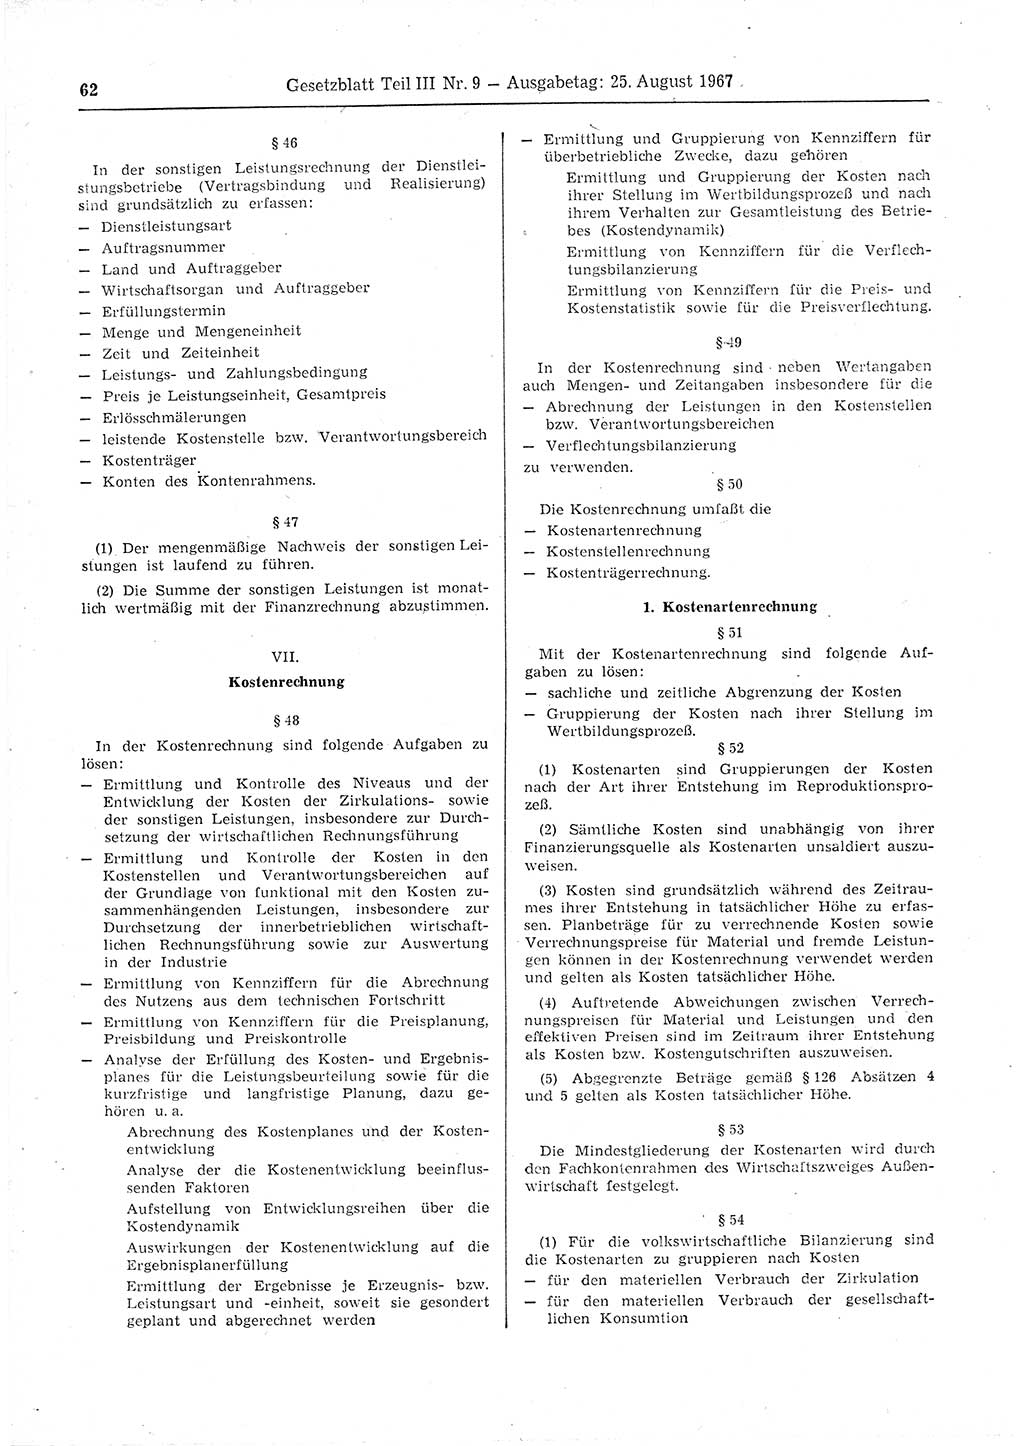 Gesetzblatt (GBl.) der Deutschen Demokratischen Republik (DDR) Teil ⅠⅠⅠ 1967, Seite 62 (GBl. DDR ⅠⅠⅠ 1967, S. 62)